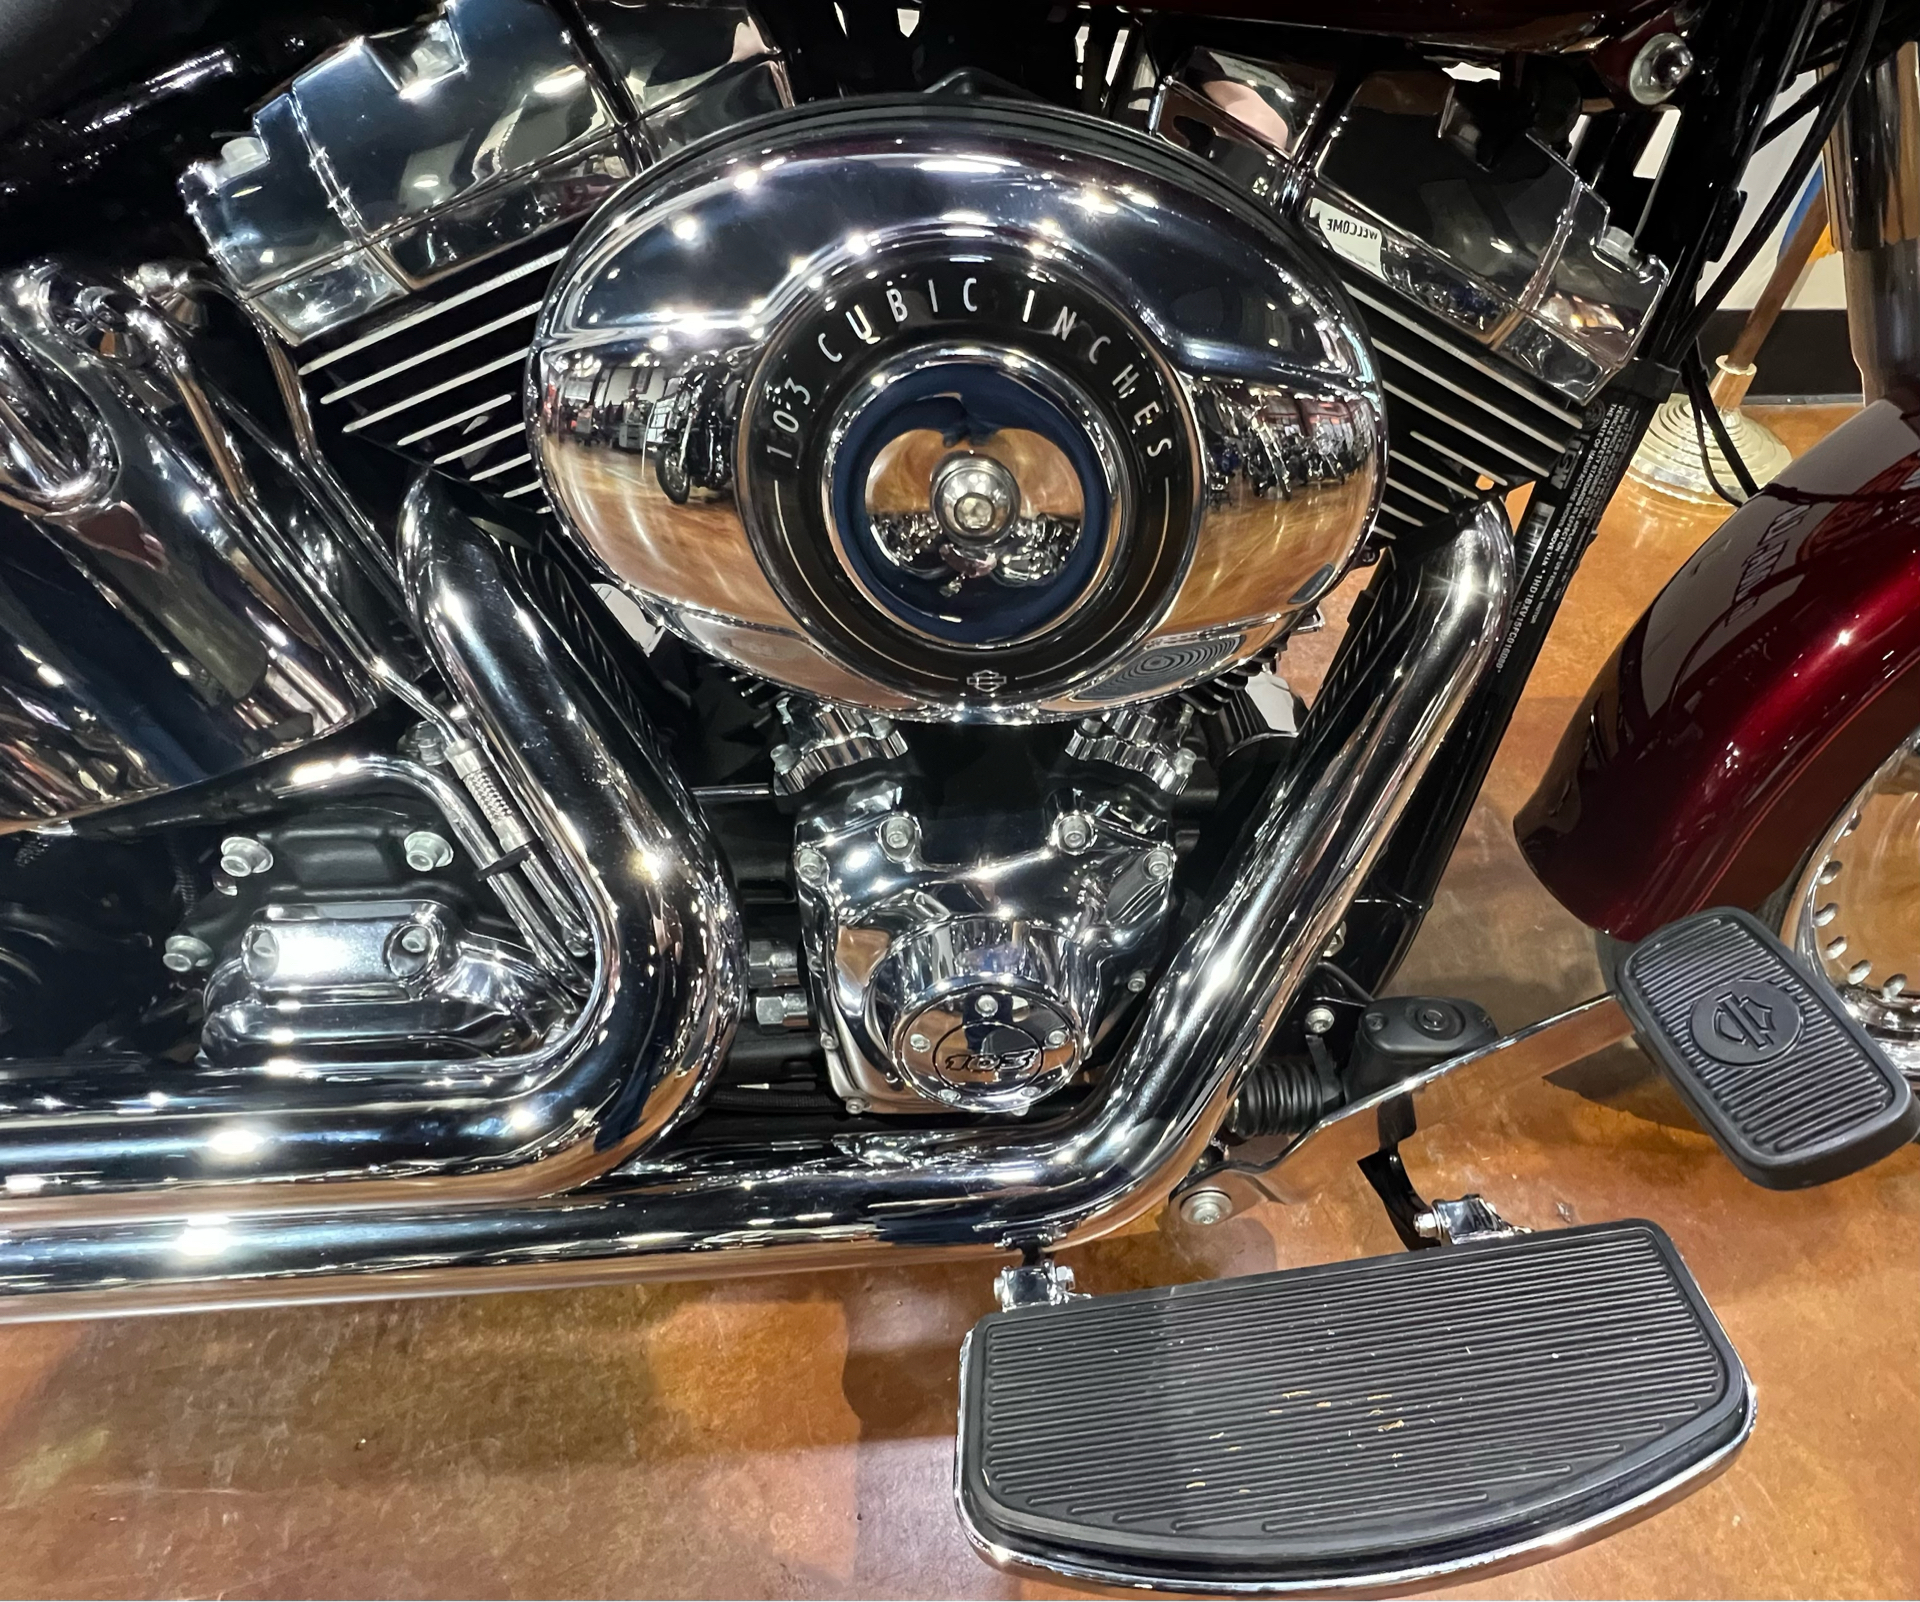 2015 Harley-Davidson Fat Boy® in Houma, Louisiana - Photo 11